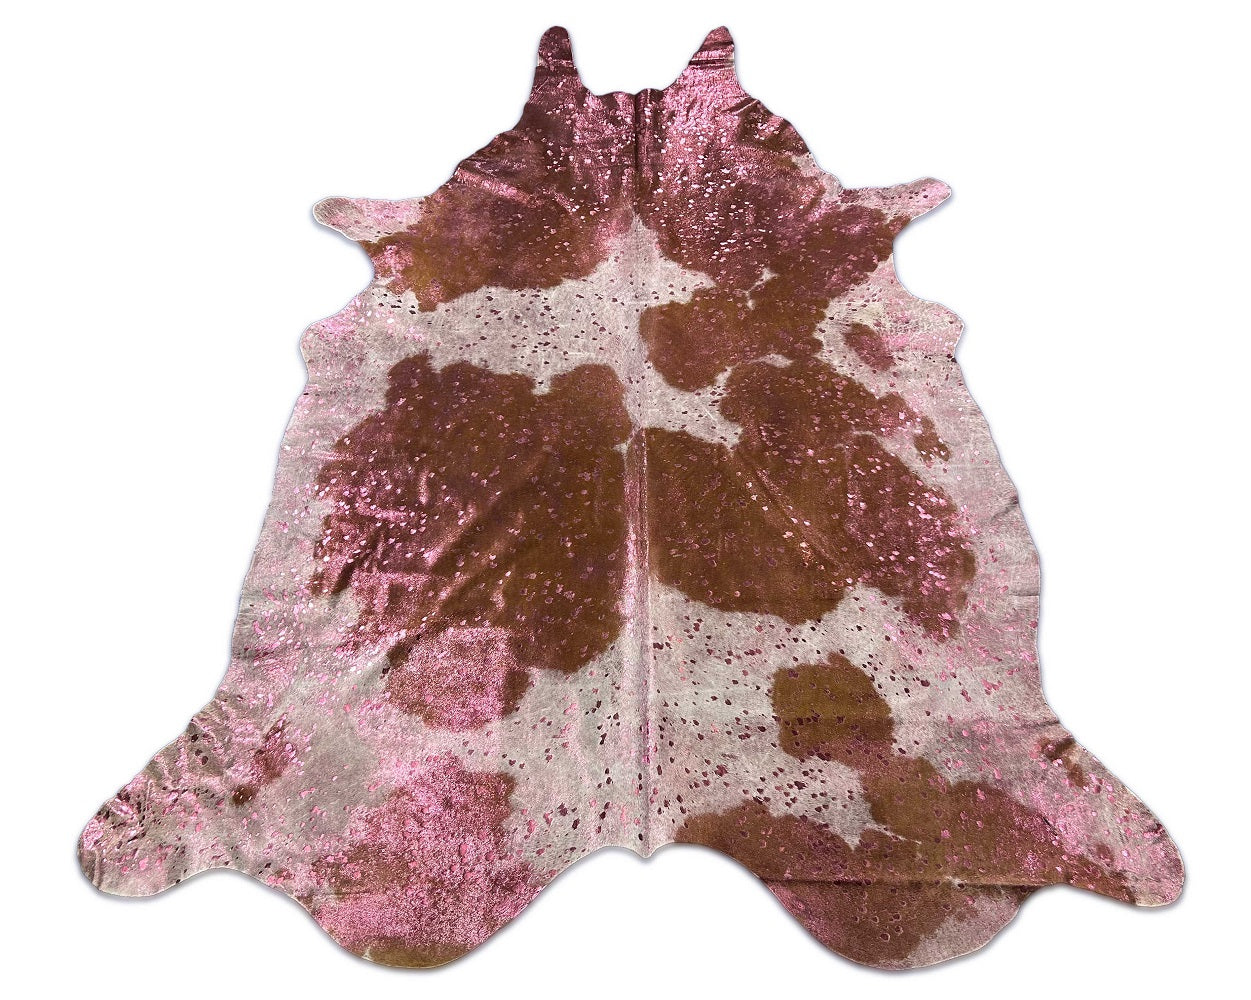 Pink Metallic Acid Washed Brown & White Cowhide Rug Size: 8.2x7 feet C-1821